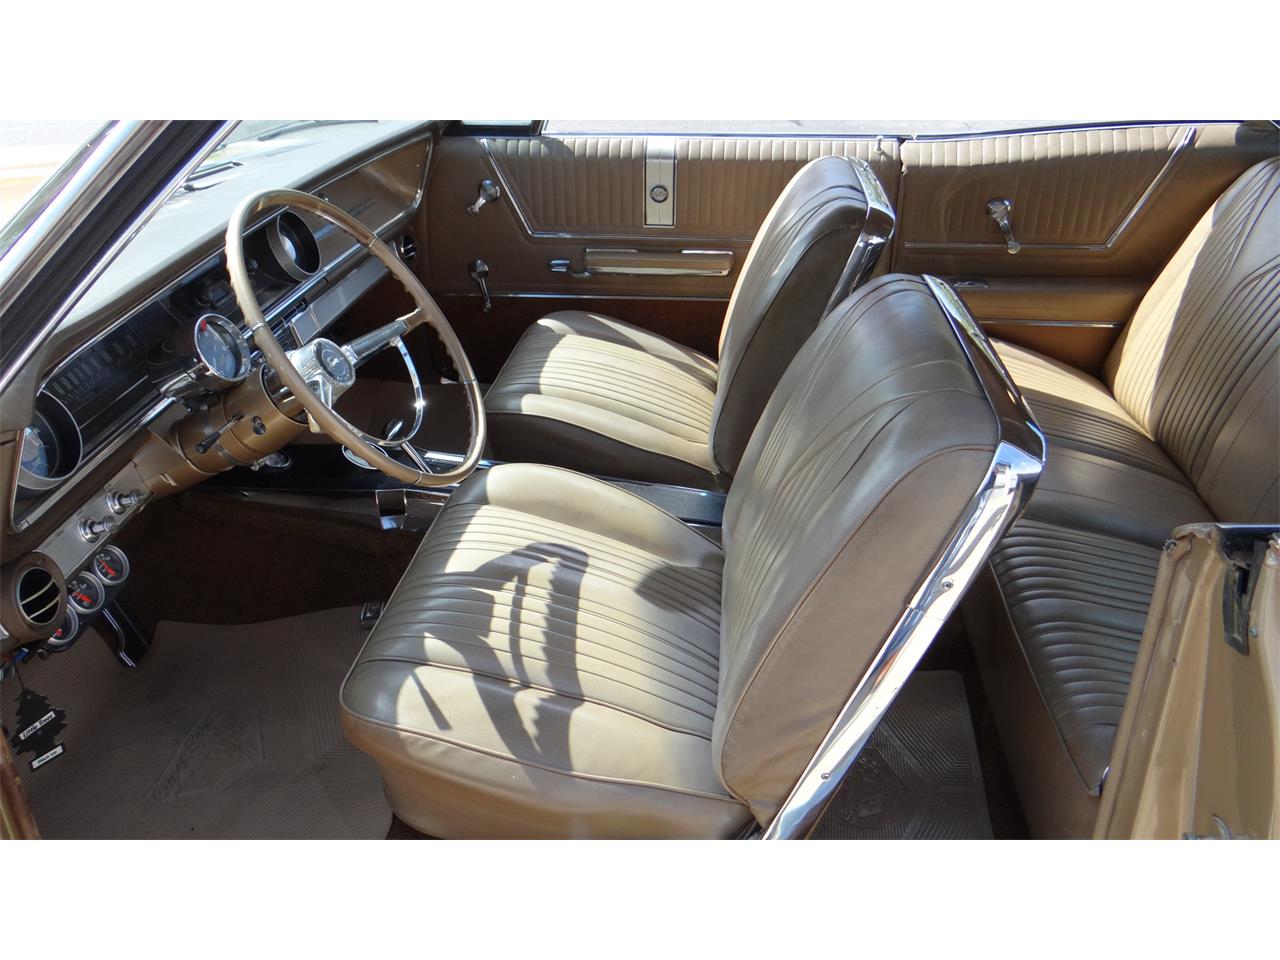 1965 Chevrolet Impala Ss For Sale Classiccars Com Cc 976754